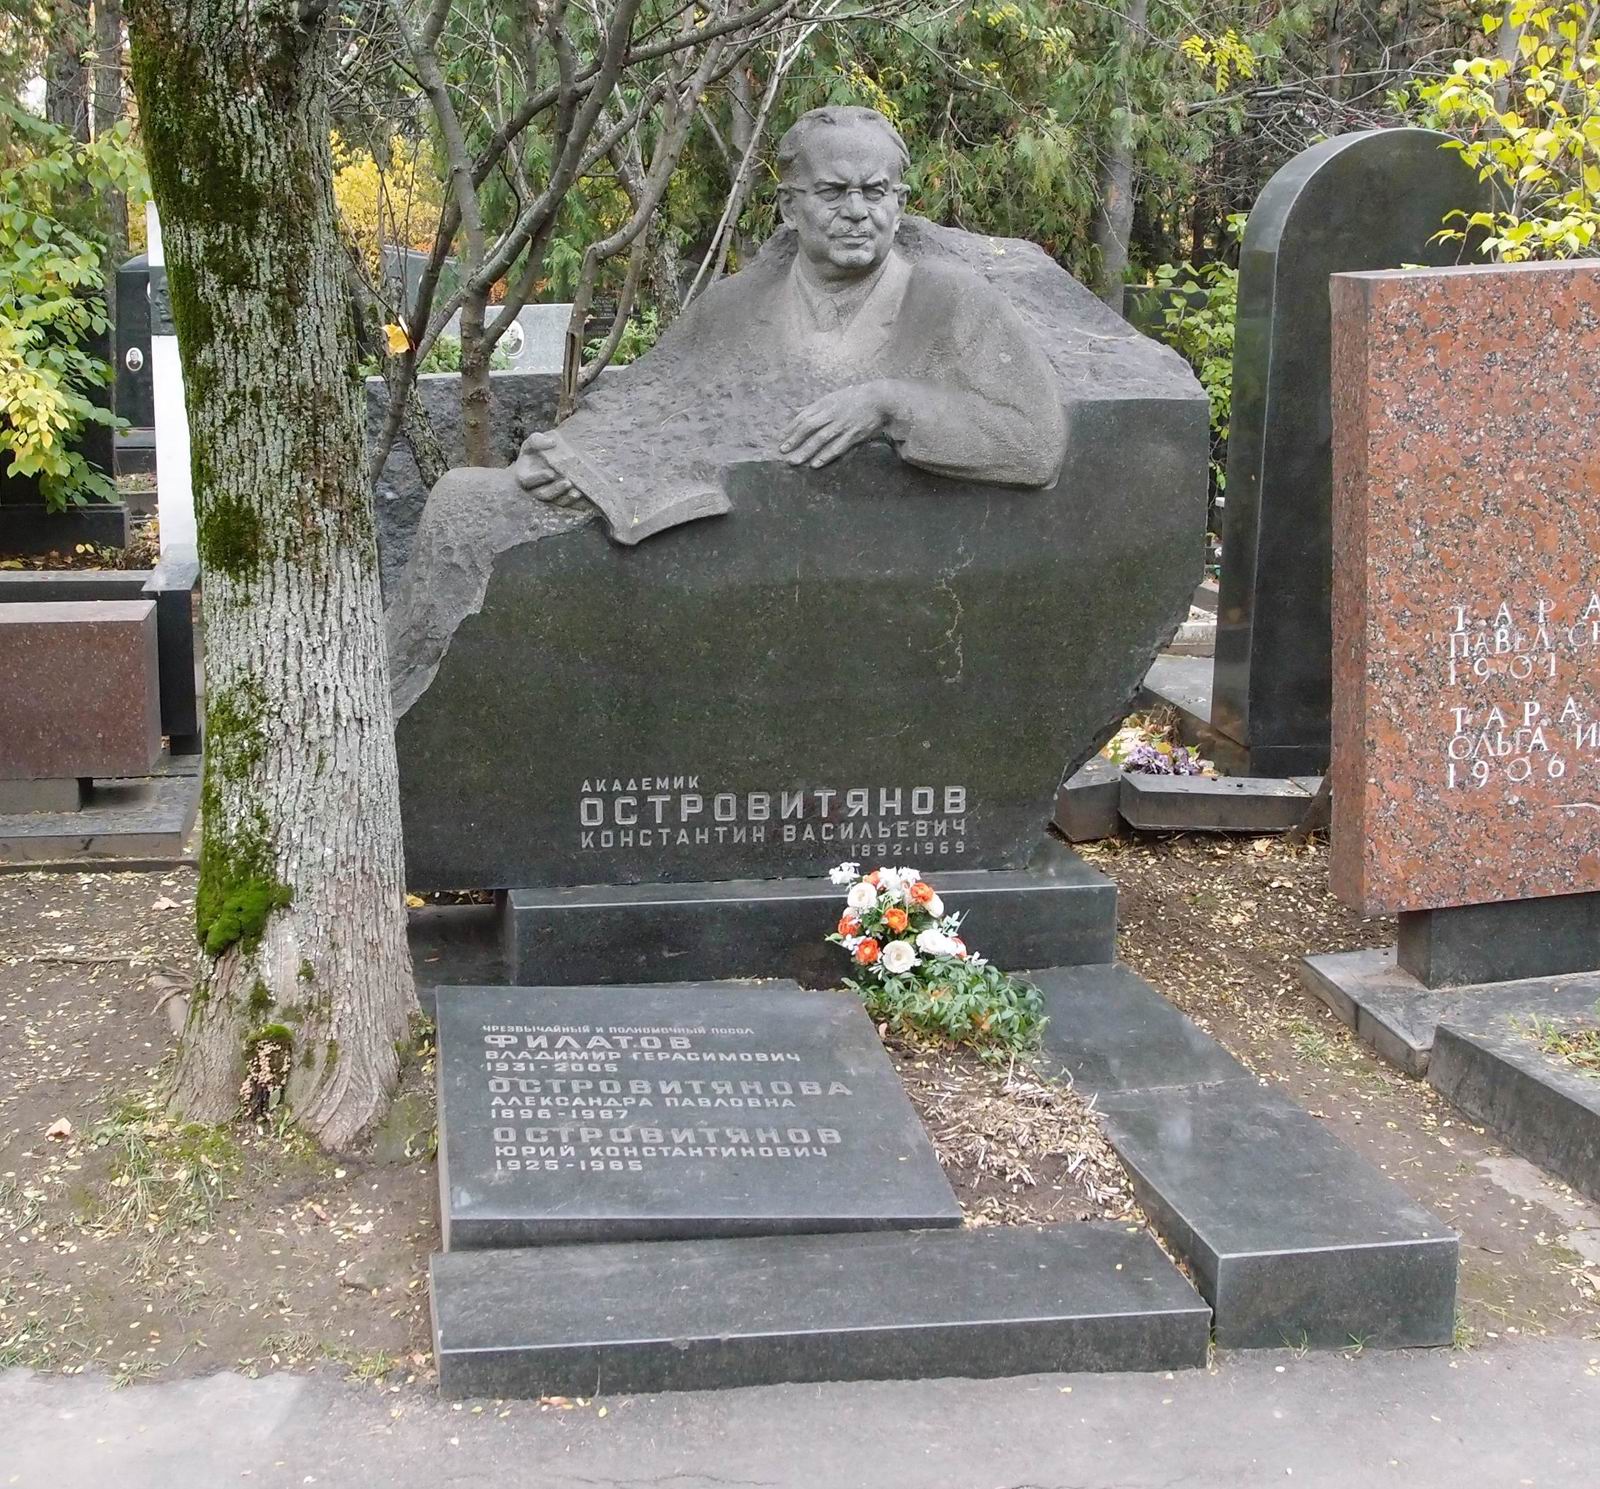 Памятник на могиле Островитянова К.В. (1892–1969), ск. З.Виленский, арх. М.Виленская, на Новодевичьем кладбище (6–22–8).